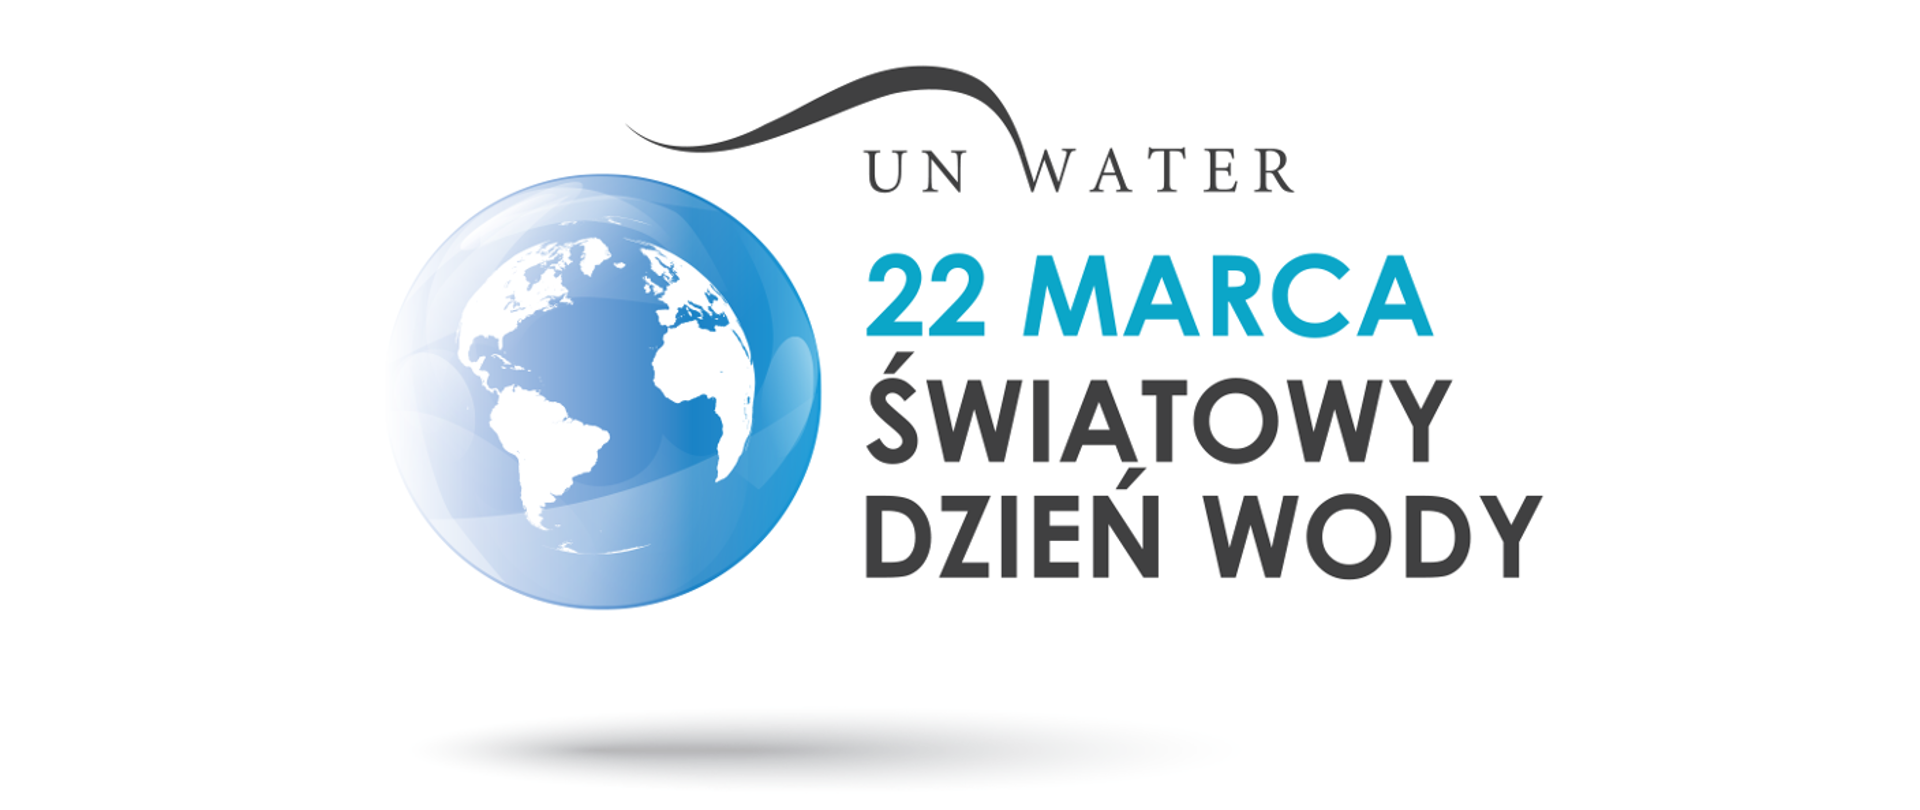 na zdjęciu znajduje się grafika kuli ziemskiej z opisem 22 marca światowy dzień wody 